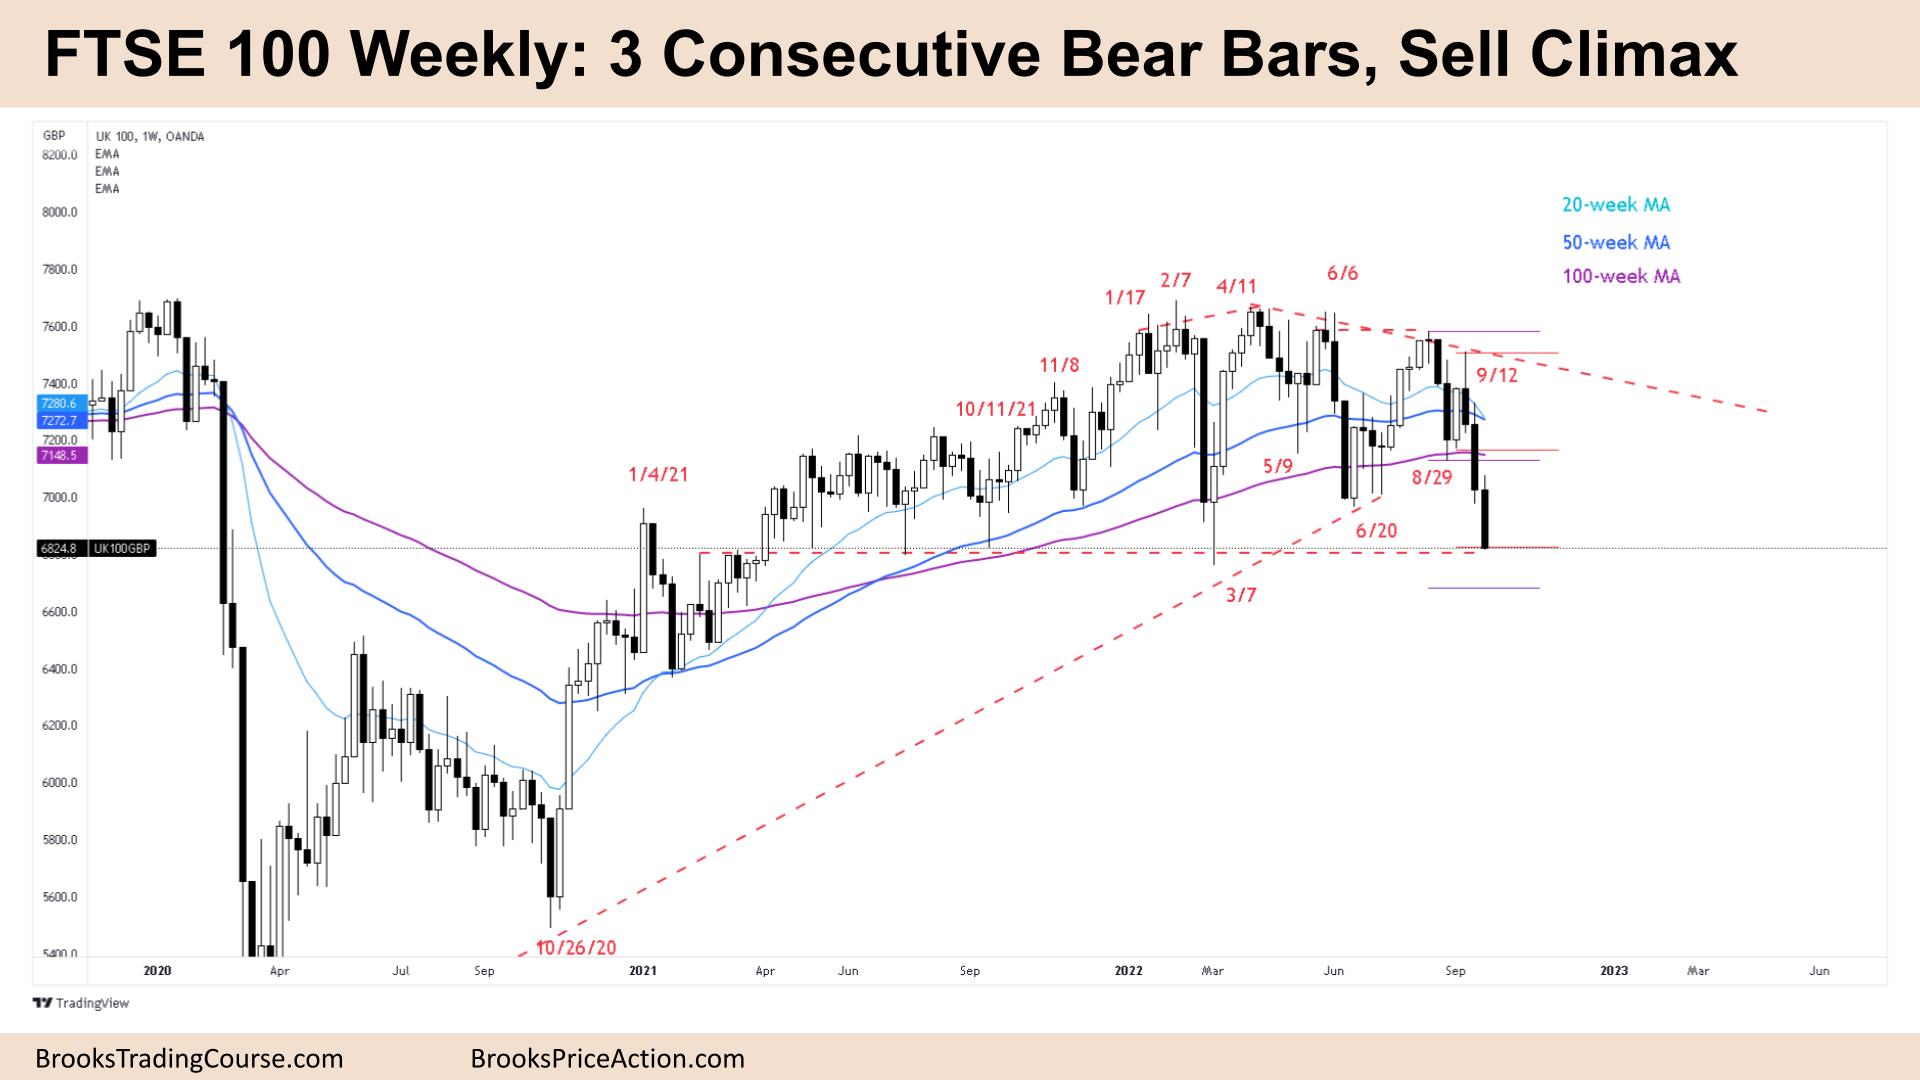 FTSE 100 Weekly 3 Consecutive Bear Bars, Sell Climax